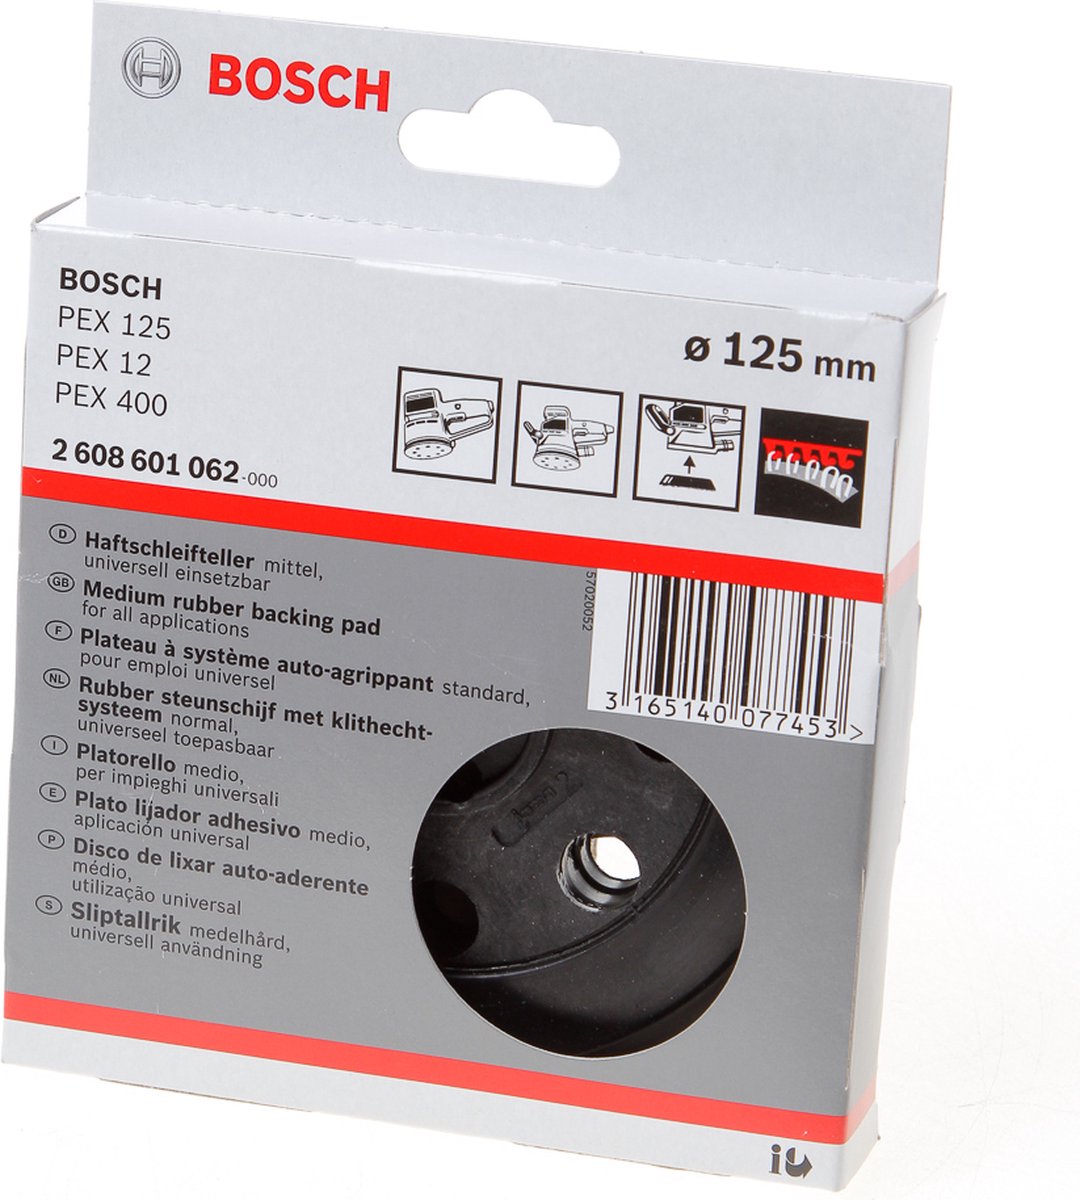 Bosch Schuurplateau - PEX 12, PEX 12 A, PEX 125 | bol.com